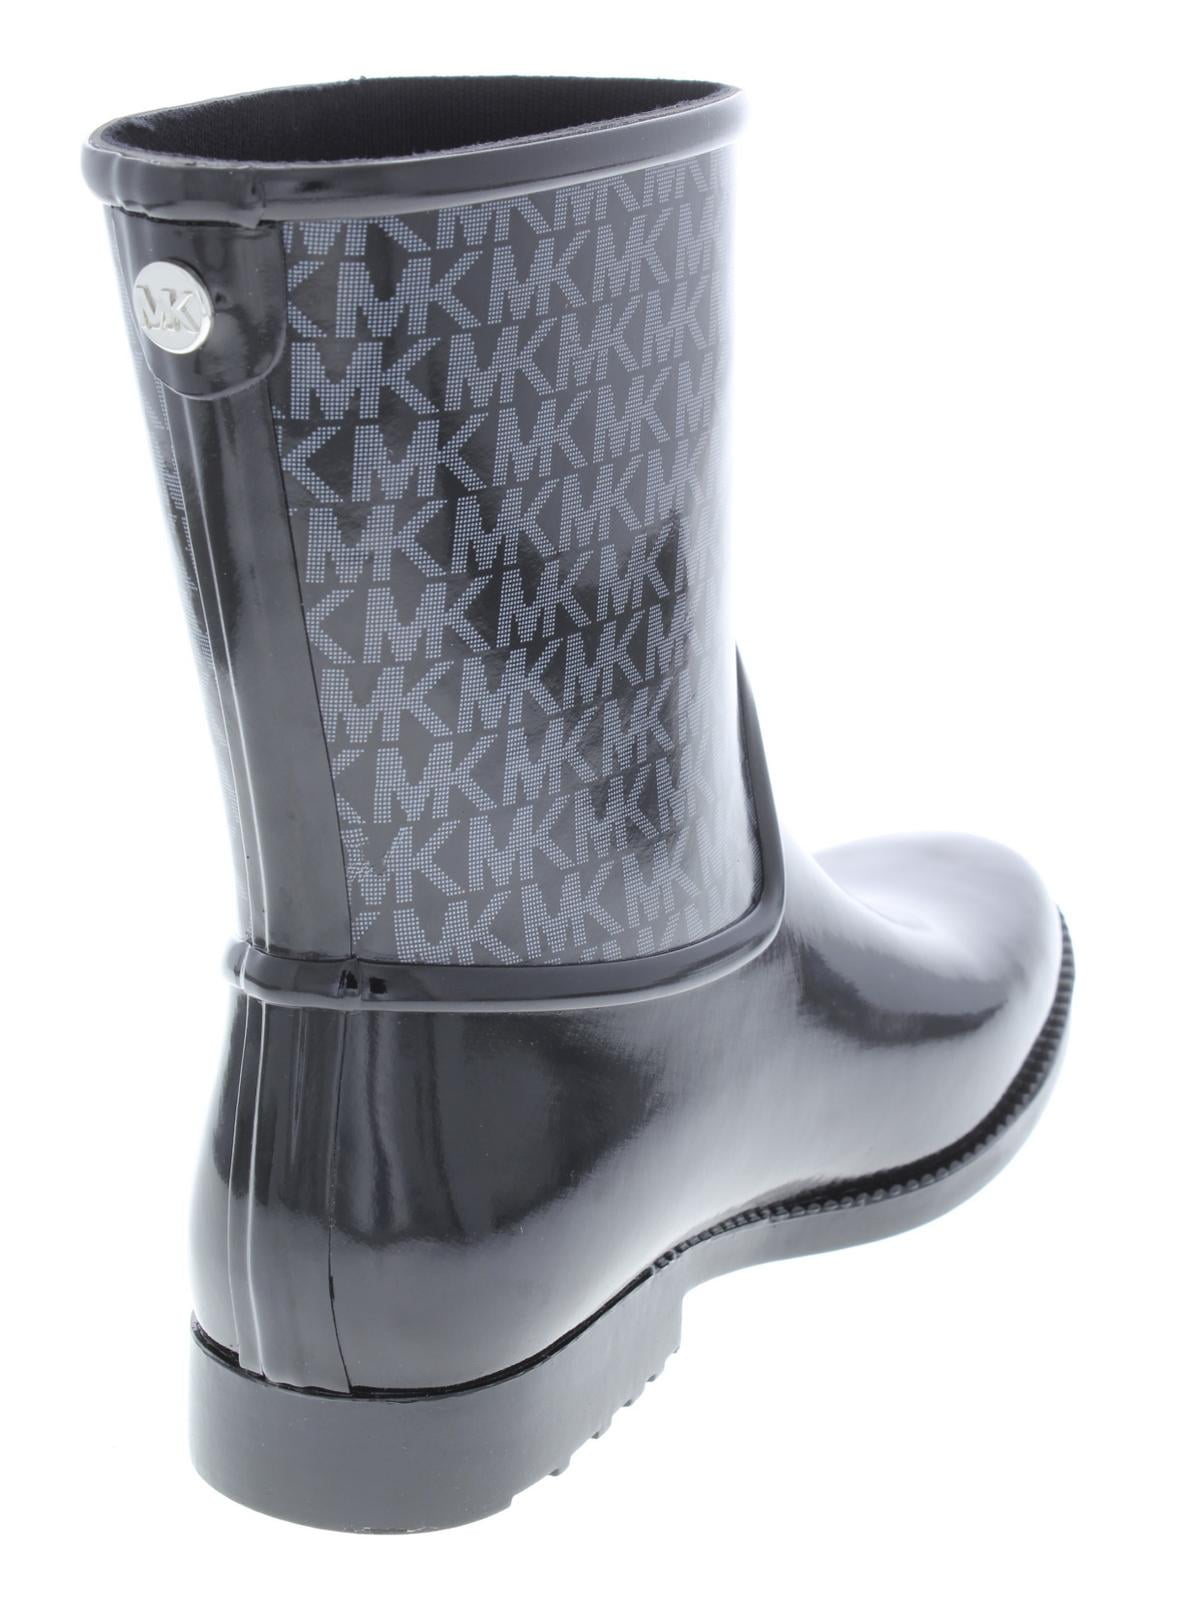 michael kors sutter rain boots